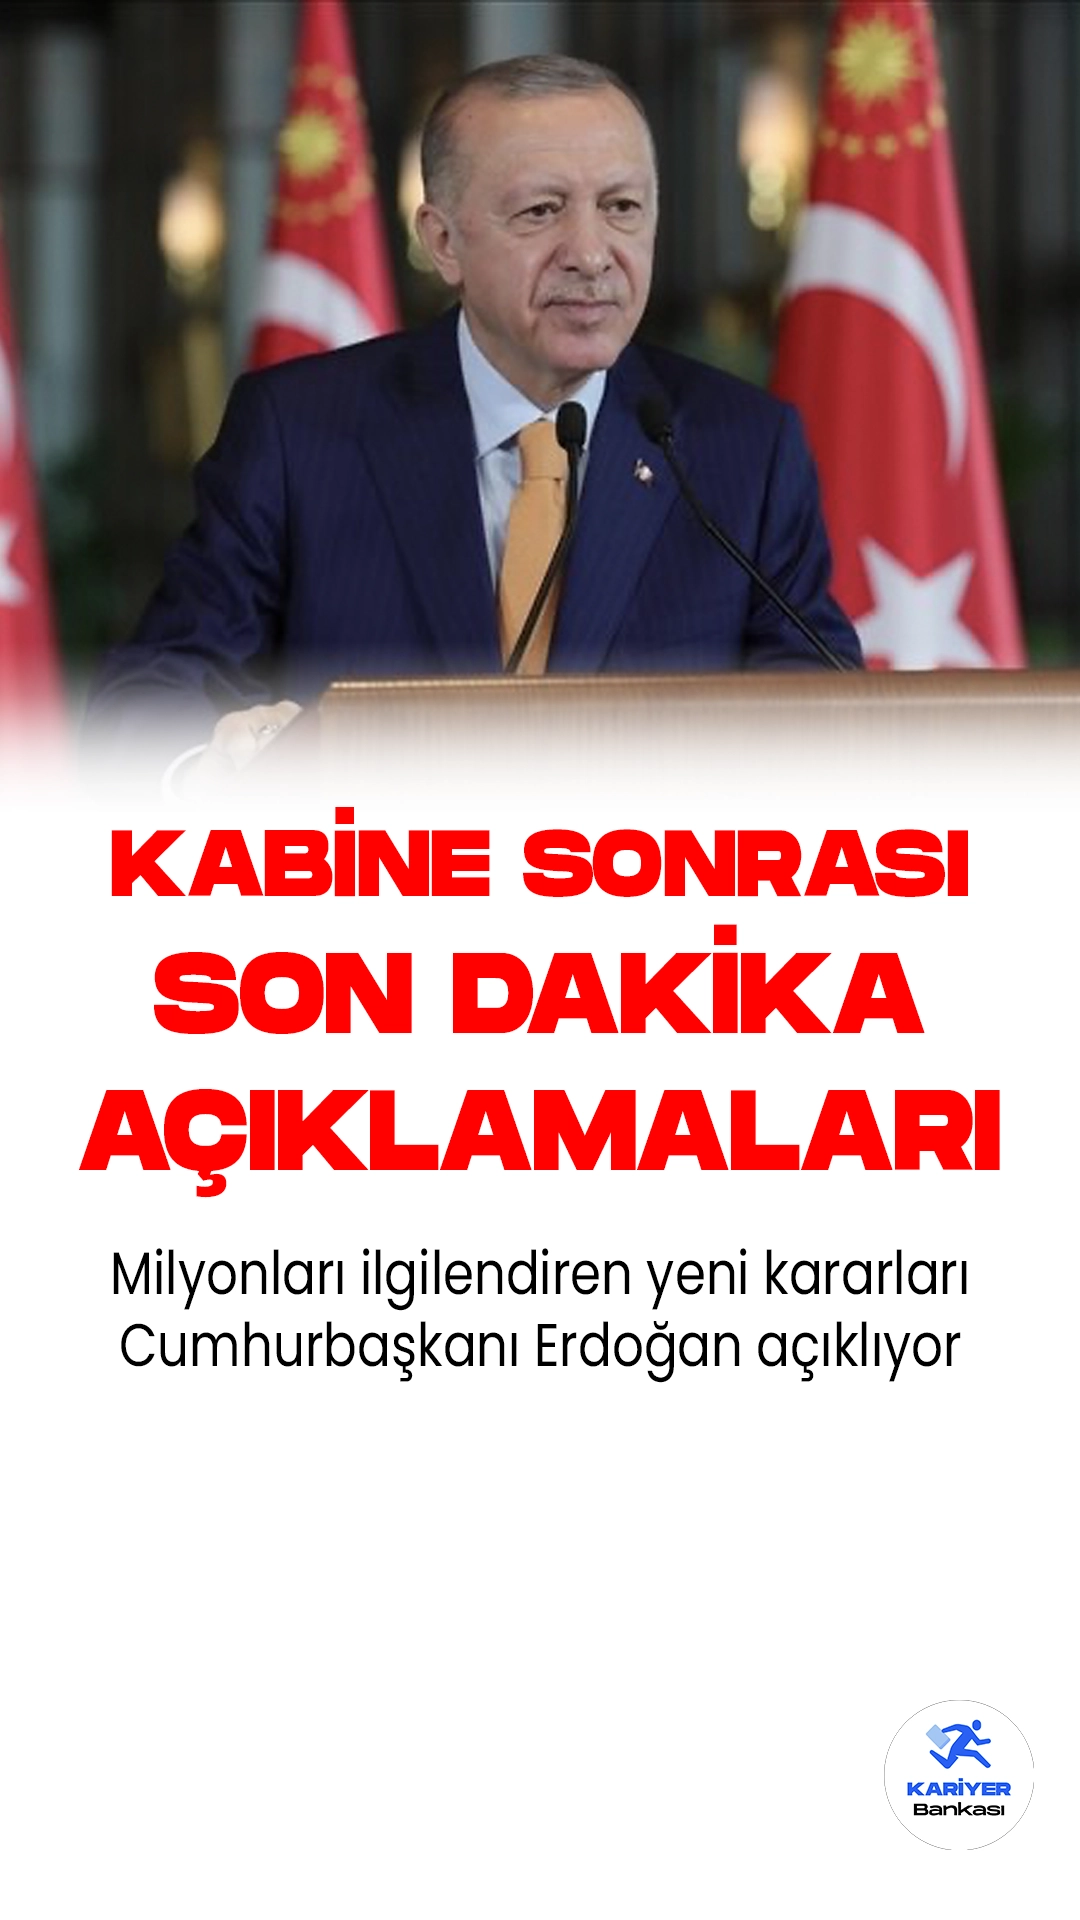 Cumhurbaşkanı Recep Tayyip Erdoğan 8 saat süren kabine toplantısının ardından açıklama yapıyor.